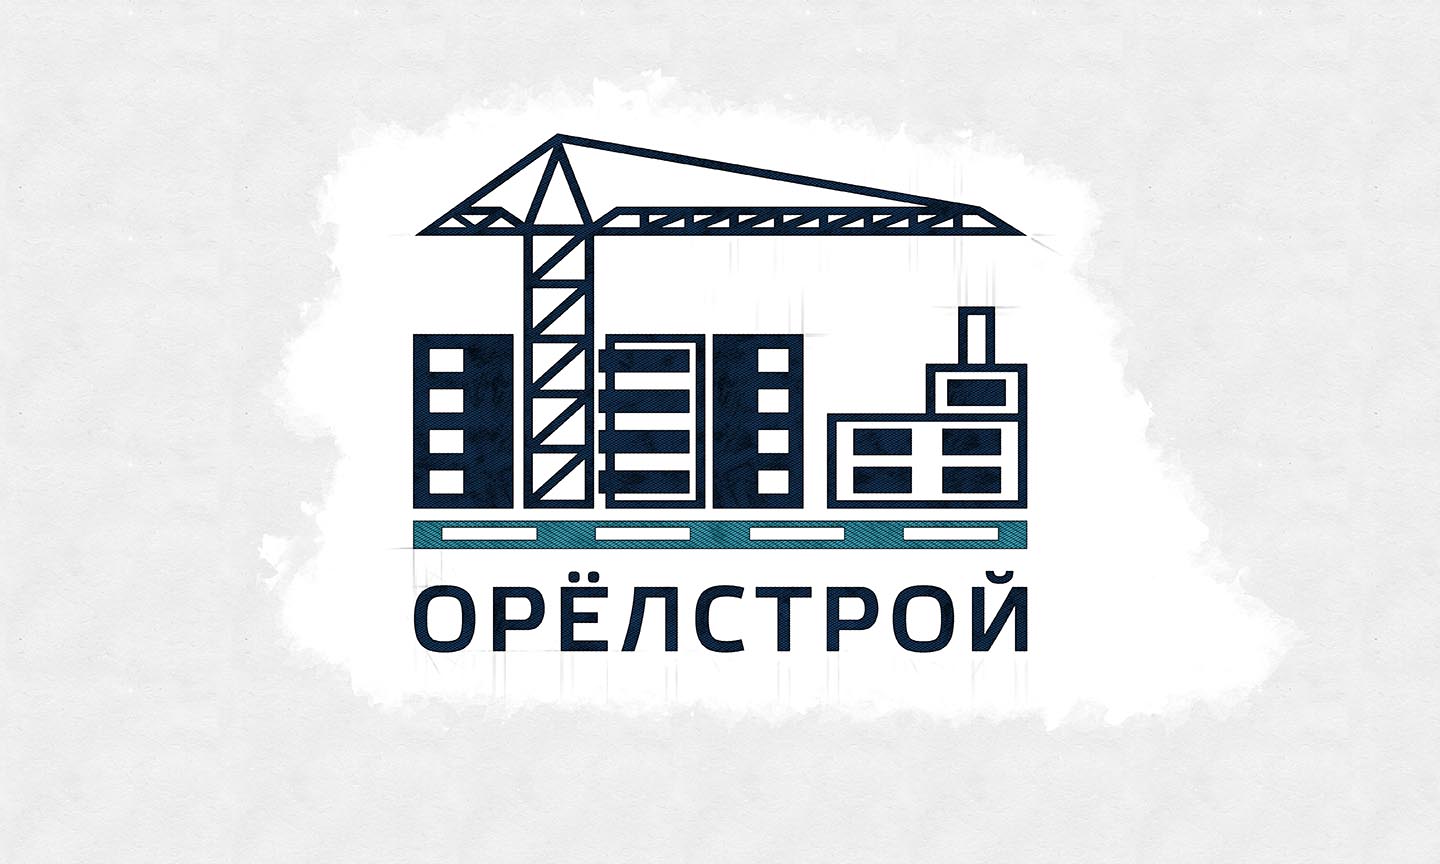 Власти Орловской области надеются продать государственный пакет акций «Орёлстроя» за миллиард рублей